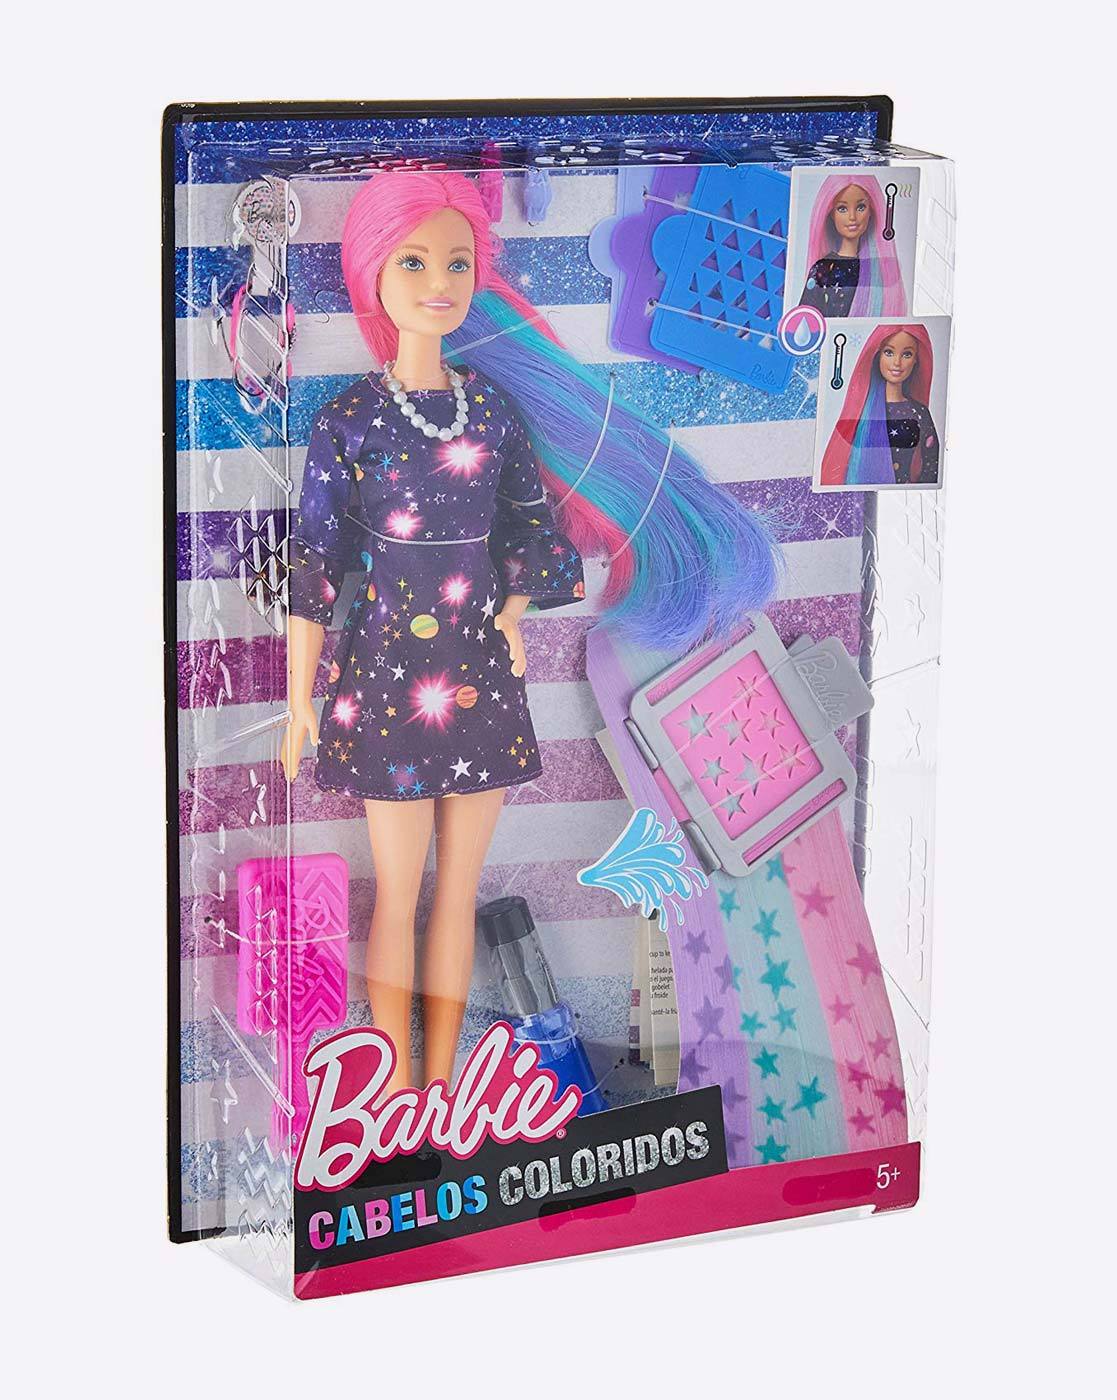 barbie doll hair accessories